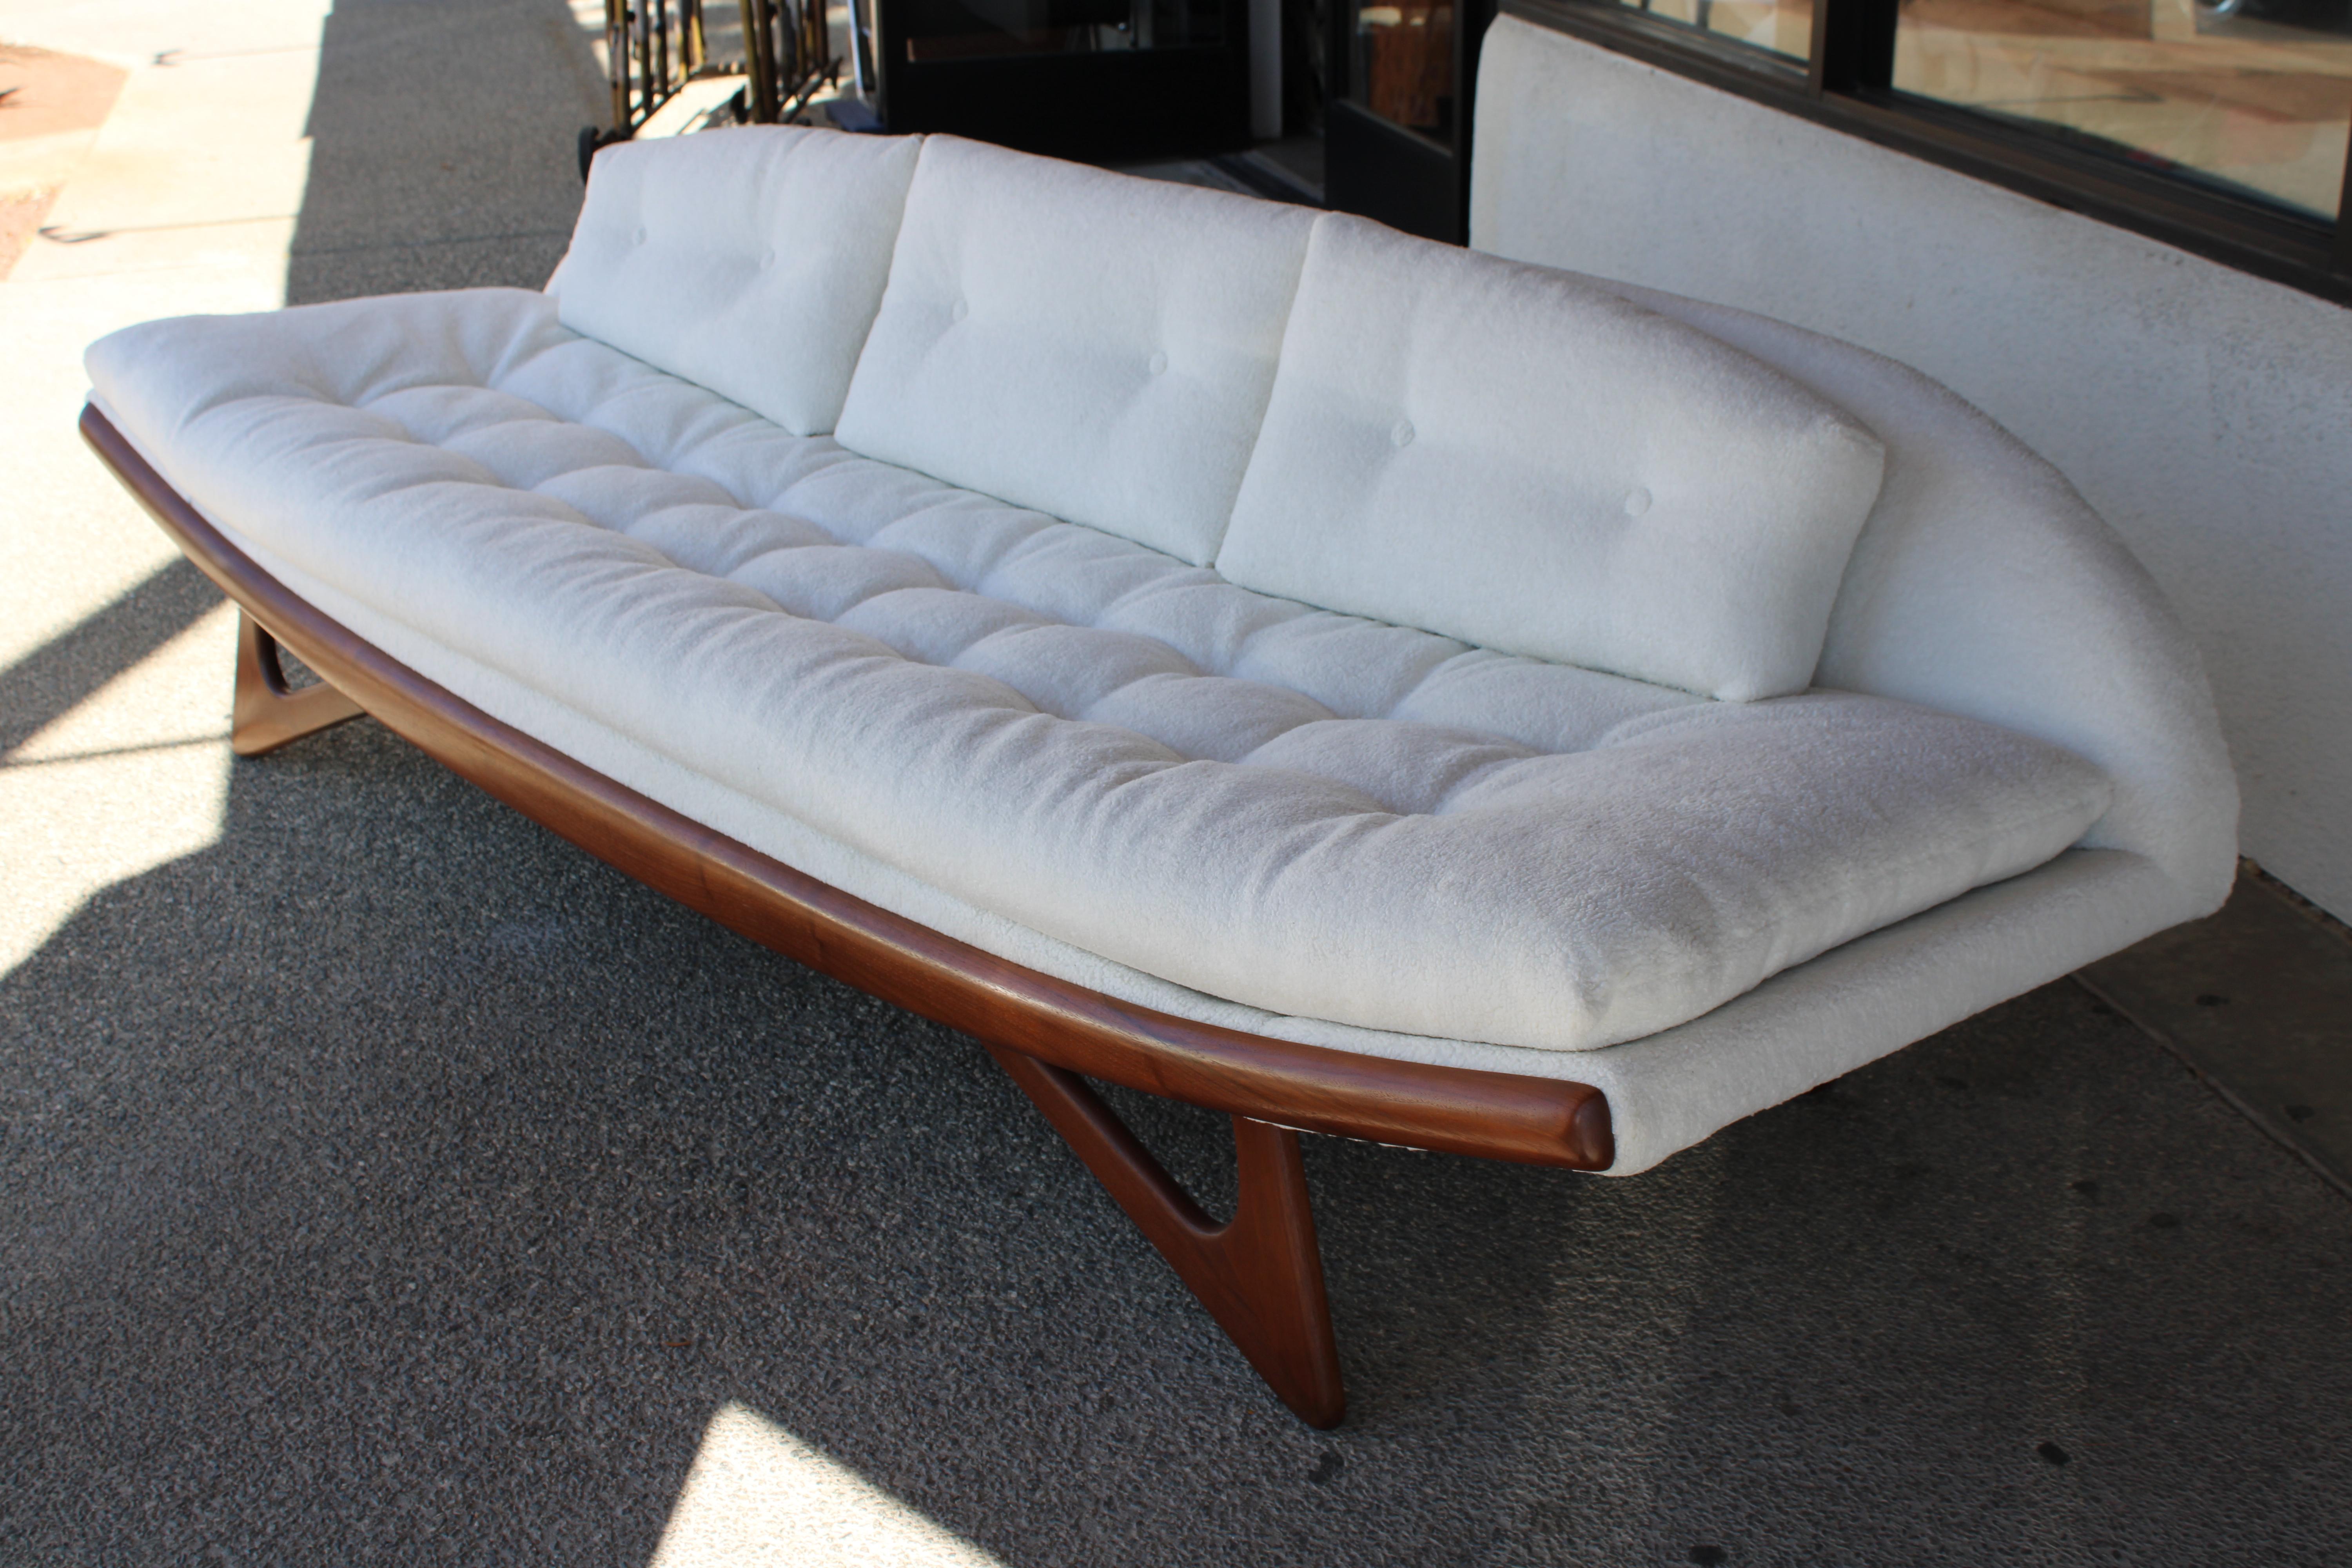 Ein unglaubliches Sofa in Gondelform, entworfen von Adrian Pearsall für Craft Associates. Fame wurde professionell aufgearbeitet. Das Sofa wurde mit neuem Gurtband, Schaumstoff und Polsterung restauriert. Gepolstert mit einem von Nick Cave